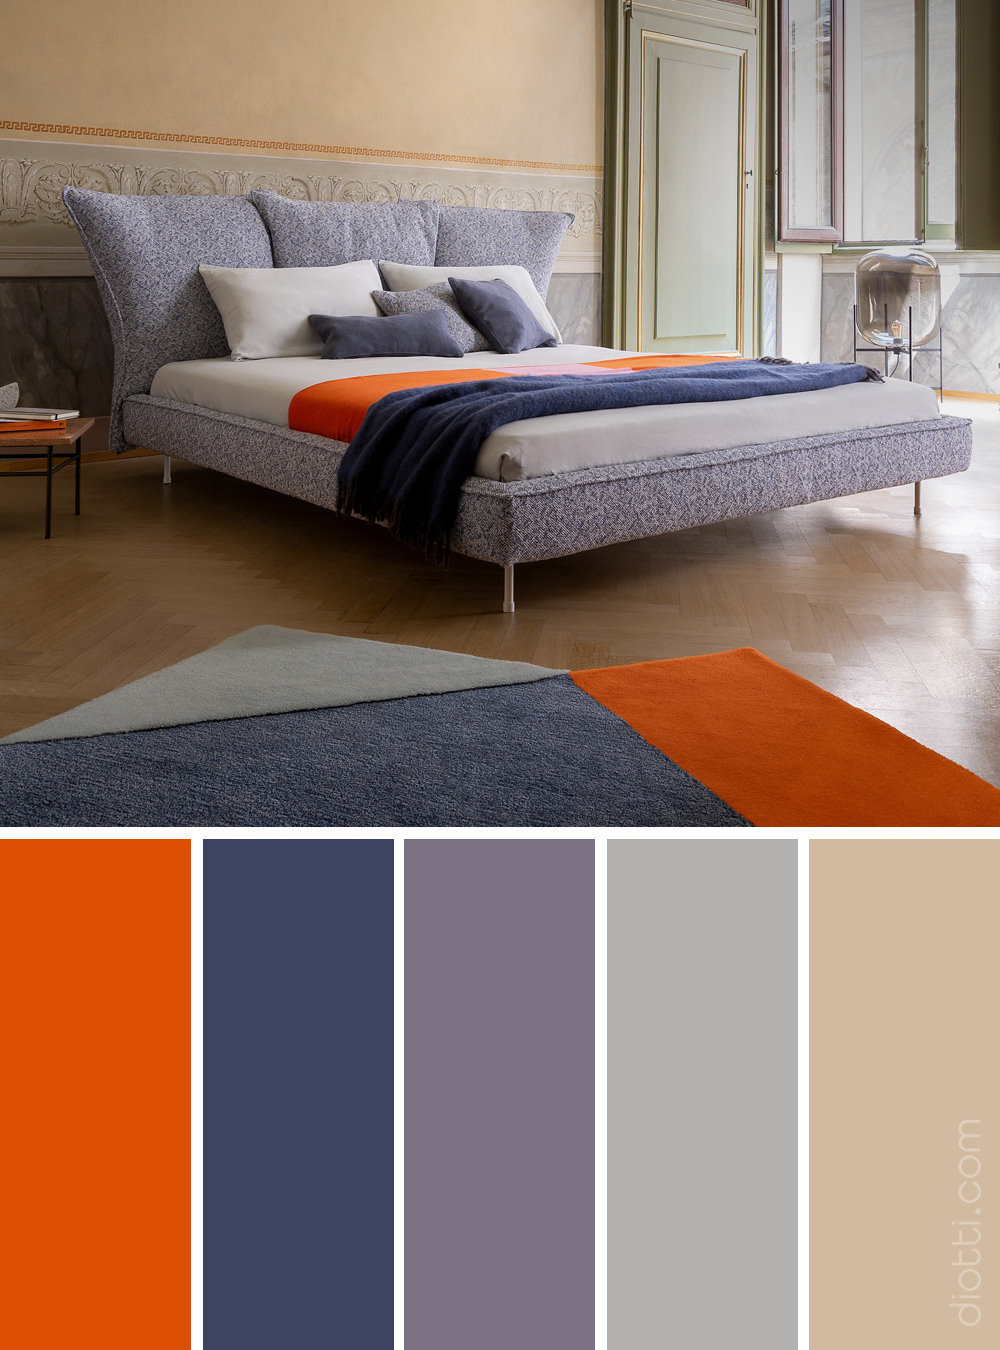 Palette di colori che abbina arancione e viola